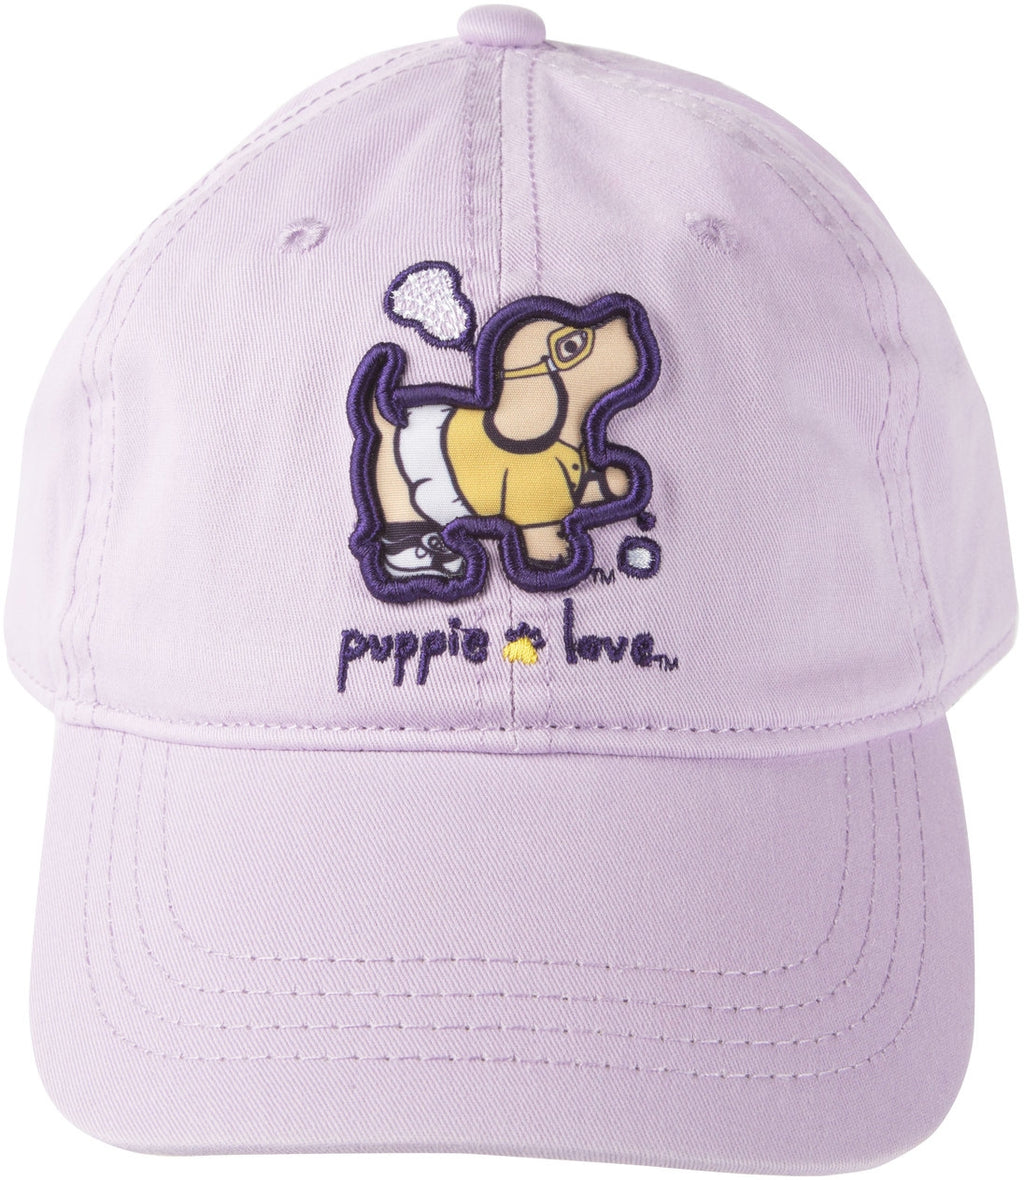 LACROSSE PUP HAT - Puppie Love